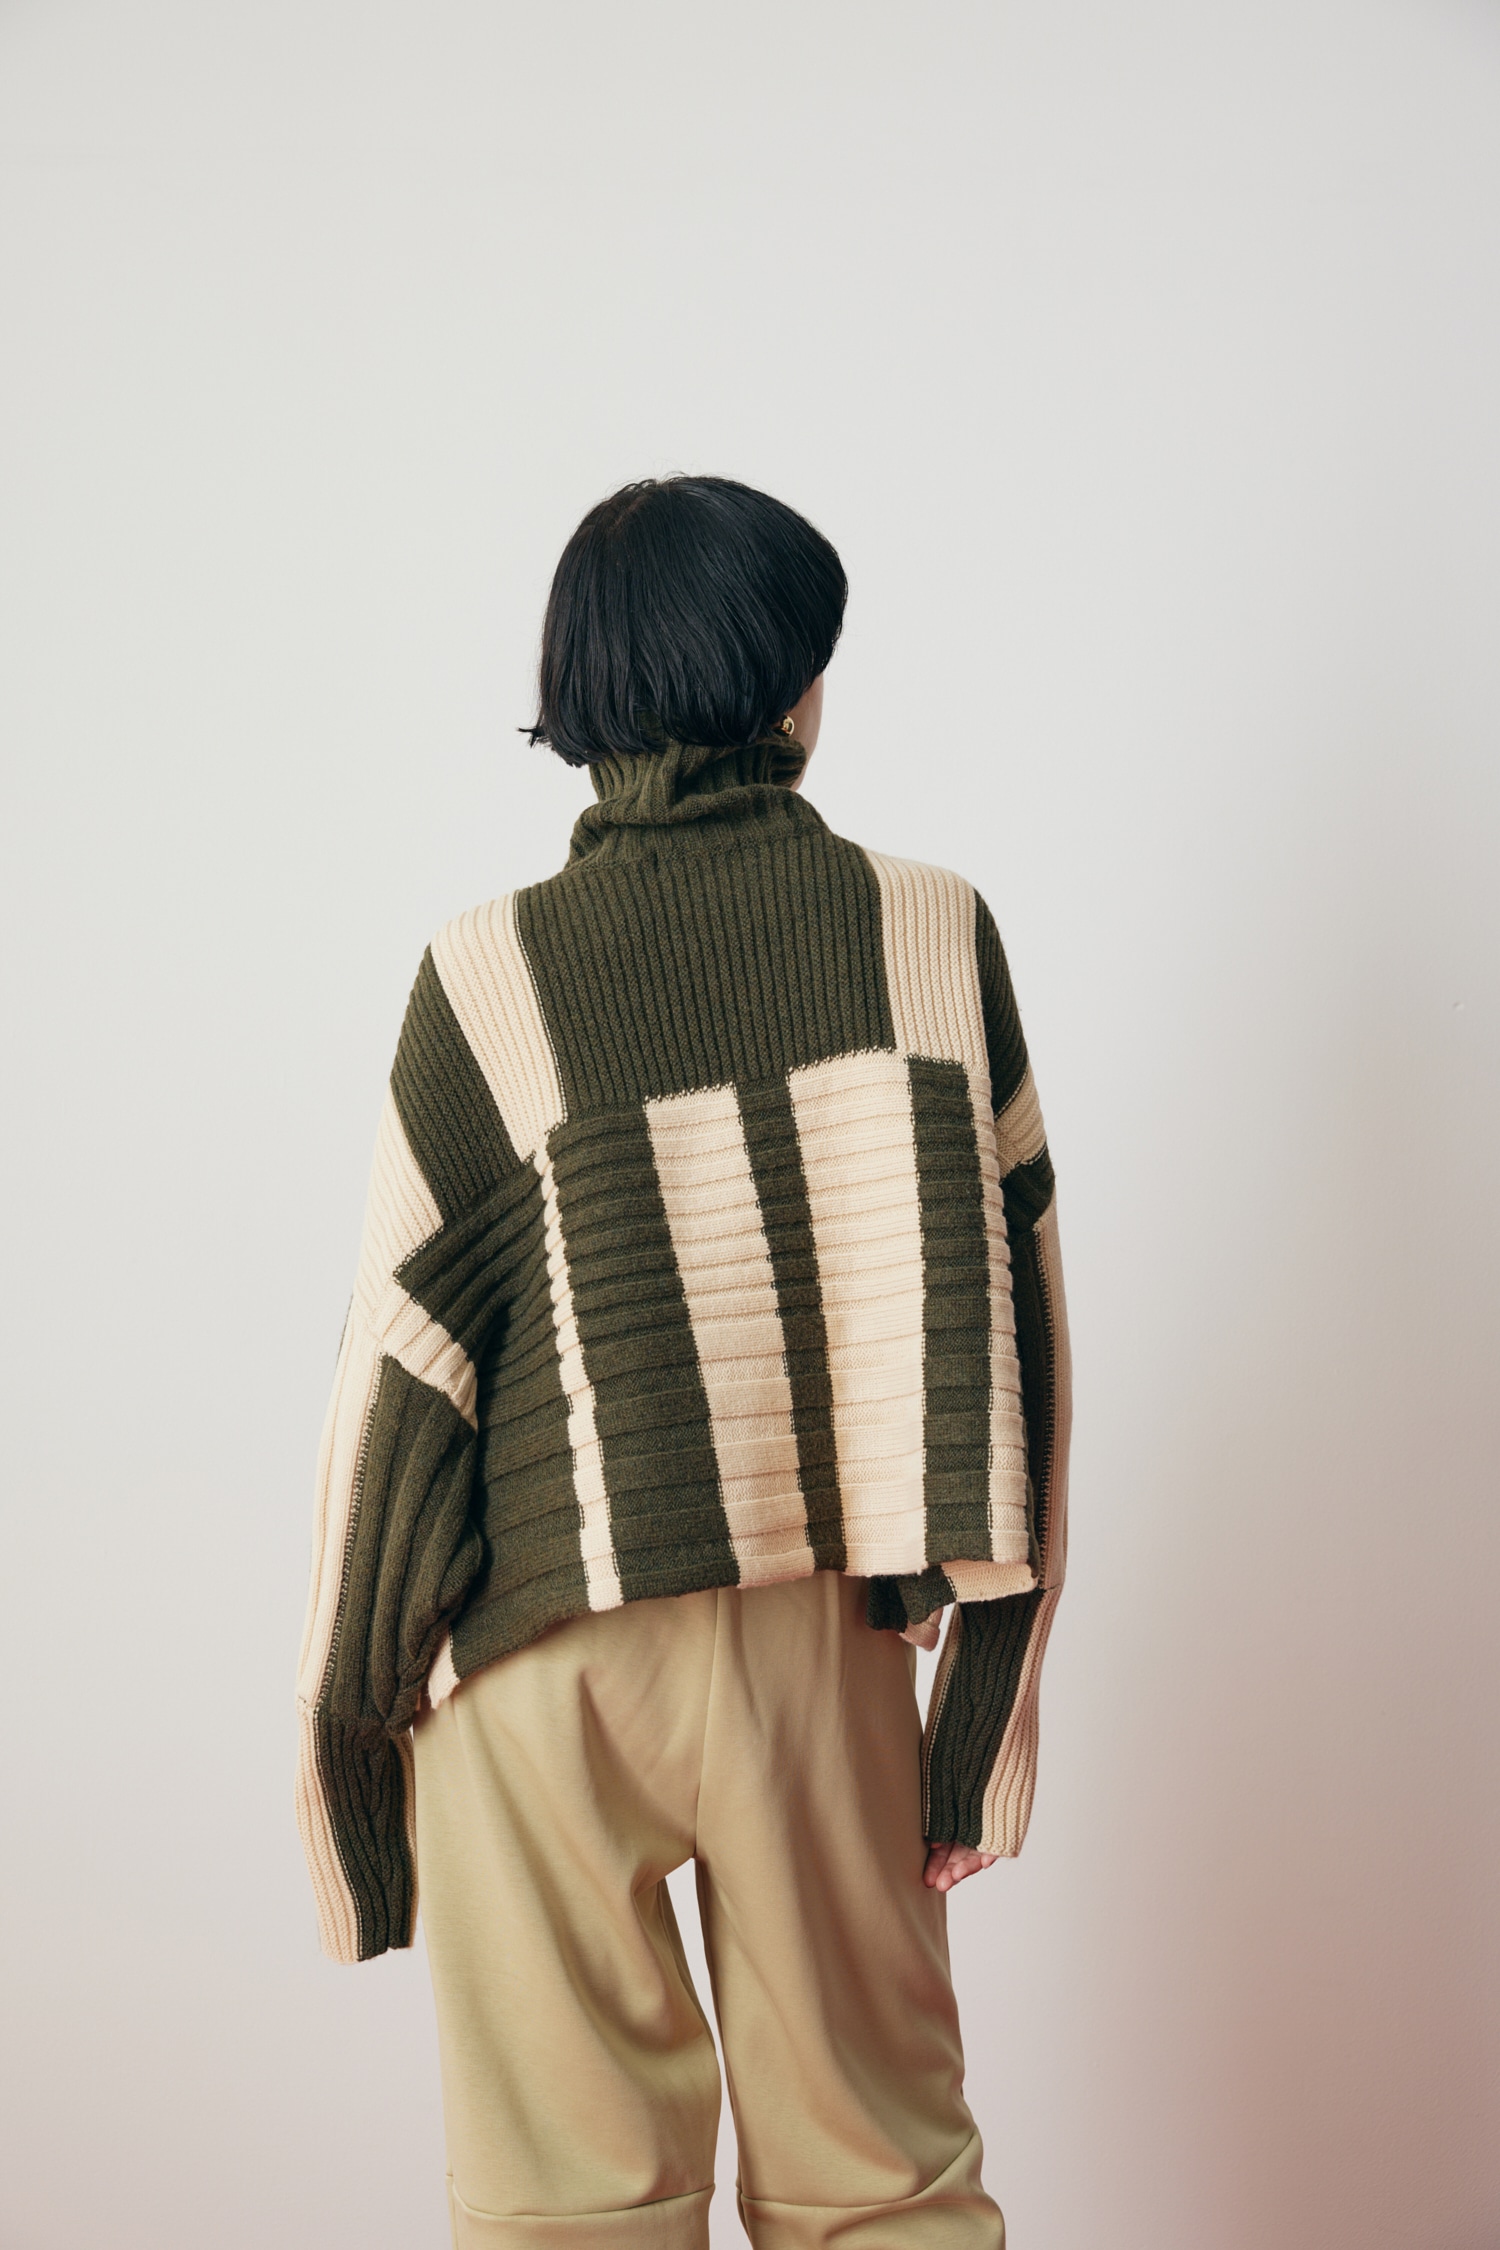 HeRIN.CYE | Box knit tops (ニット ) |SHEL'TTER WEBSTORE